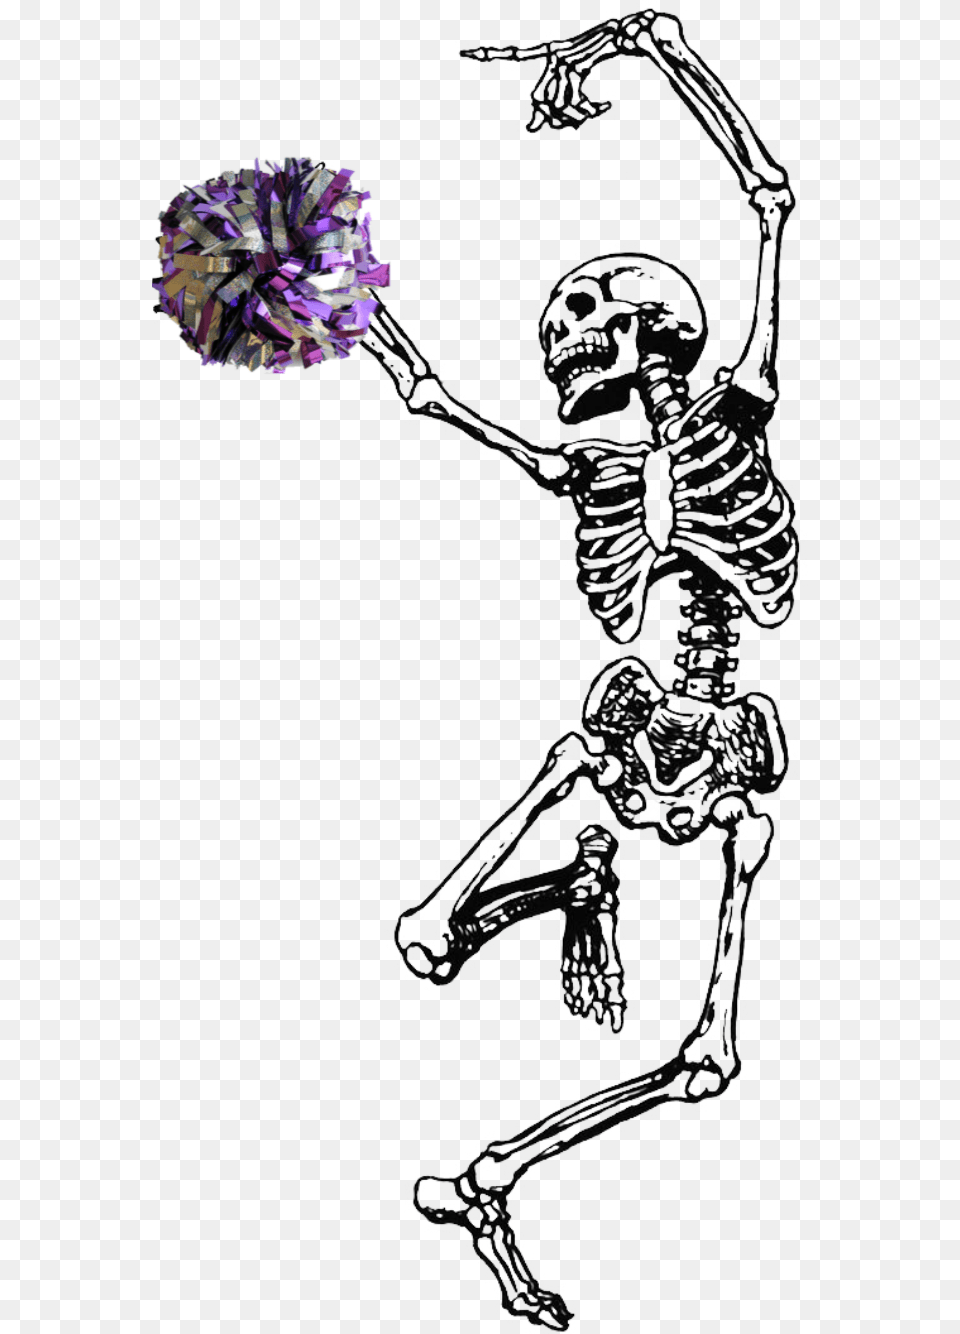 Cheer Cheerleader Cheering Cheerleading Skeleton Dancing Grateful Dead Skeleton, Plant, Flower, Accessories, Jewelry Free Png Download